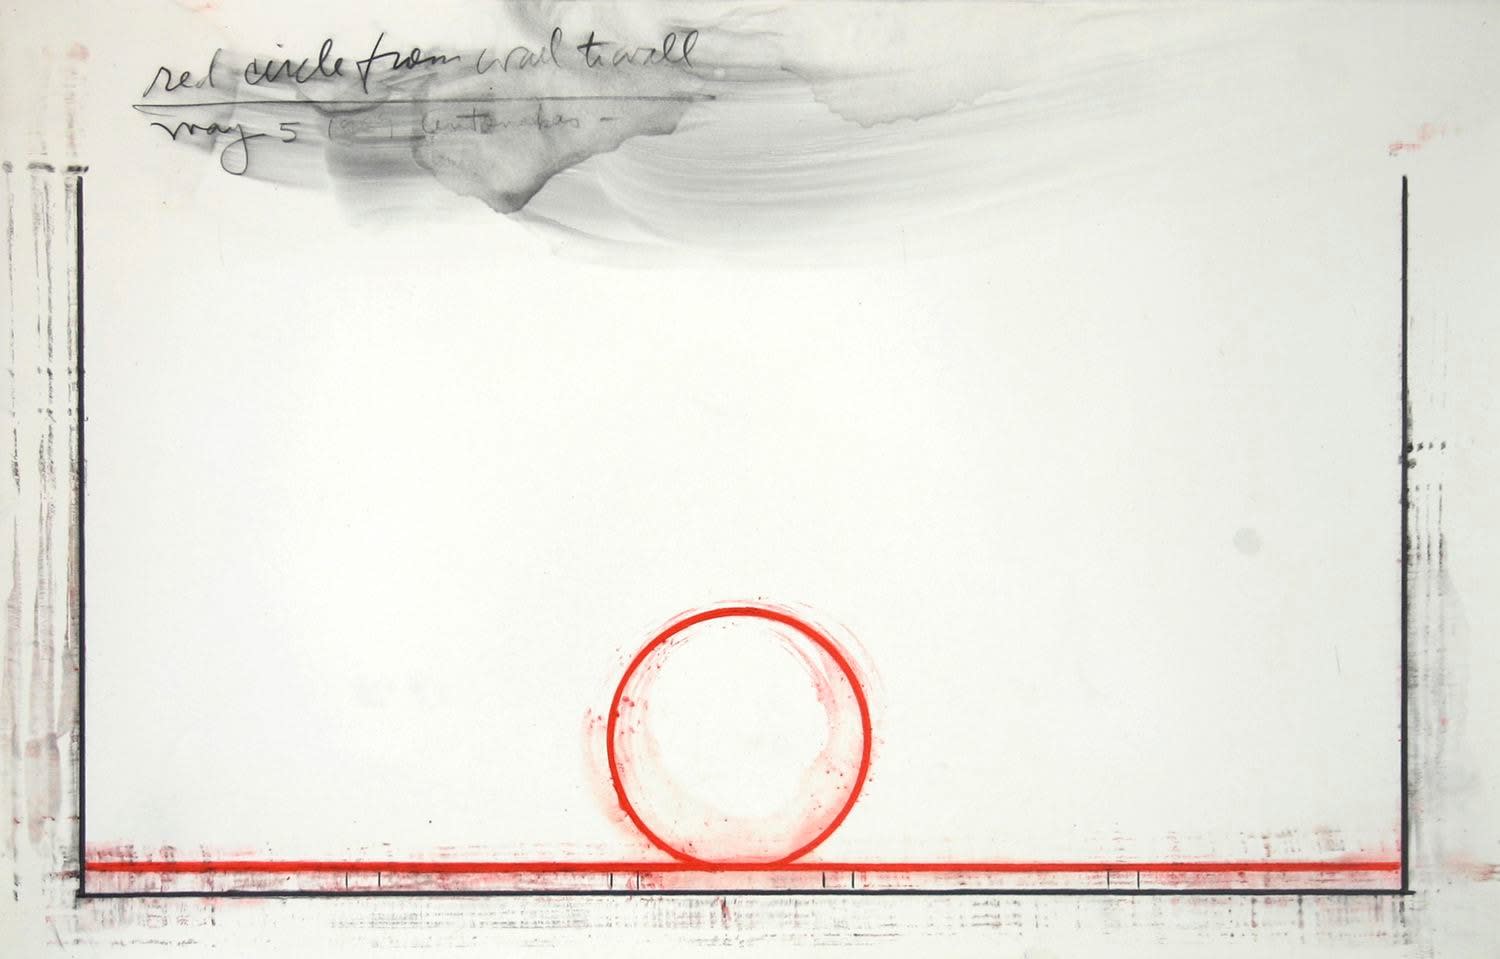 Stephen Antonakos, Red Circle from Wall to Wall, May 5, 1969, 1969